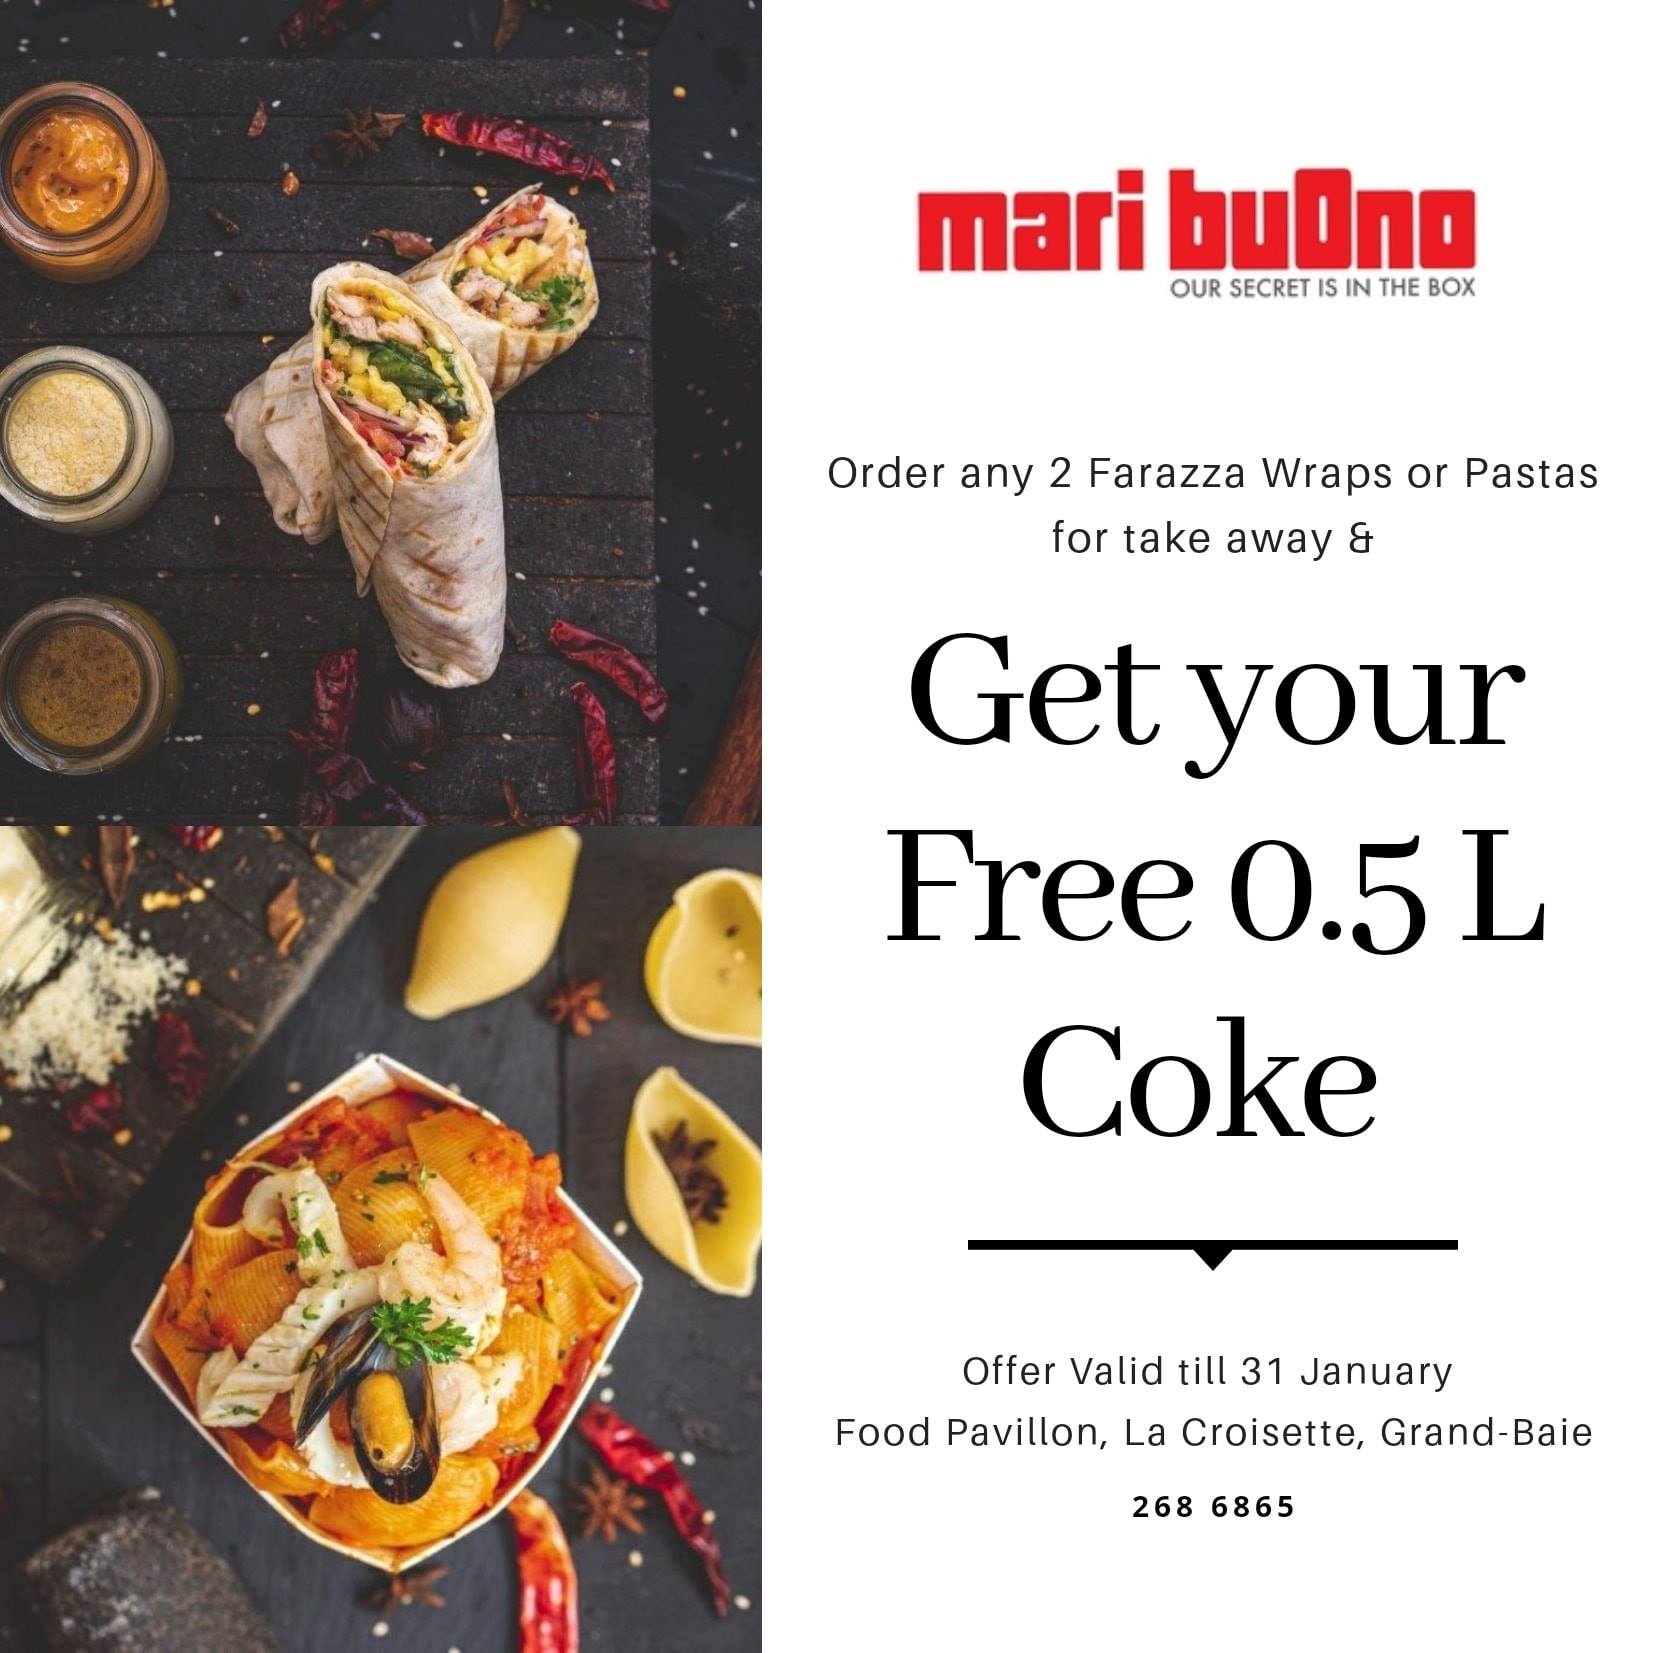 Get a 0.5L Coke for FREE at Mari Buono